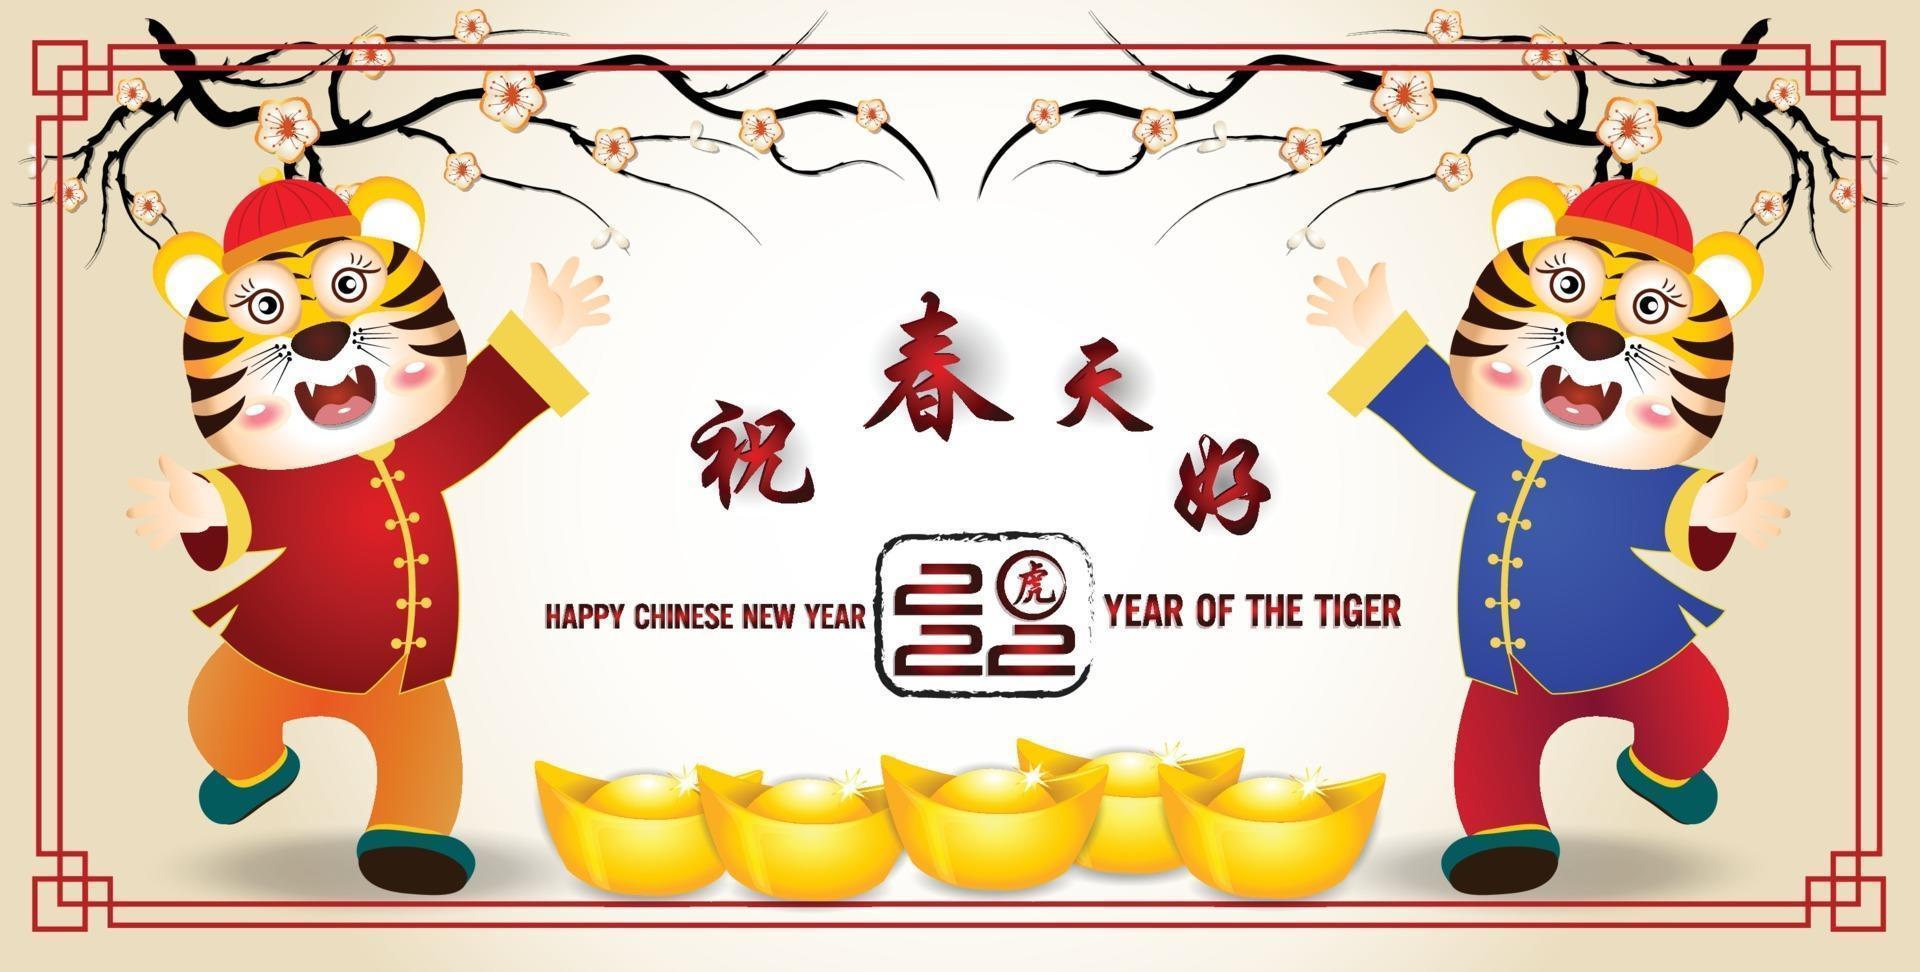 feliz año nuevo chino 2022 - año del tigre vector